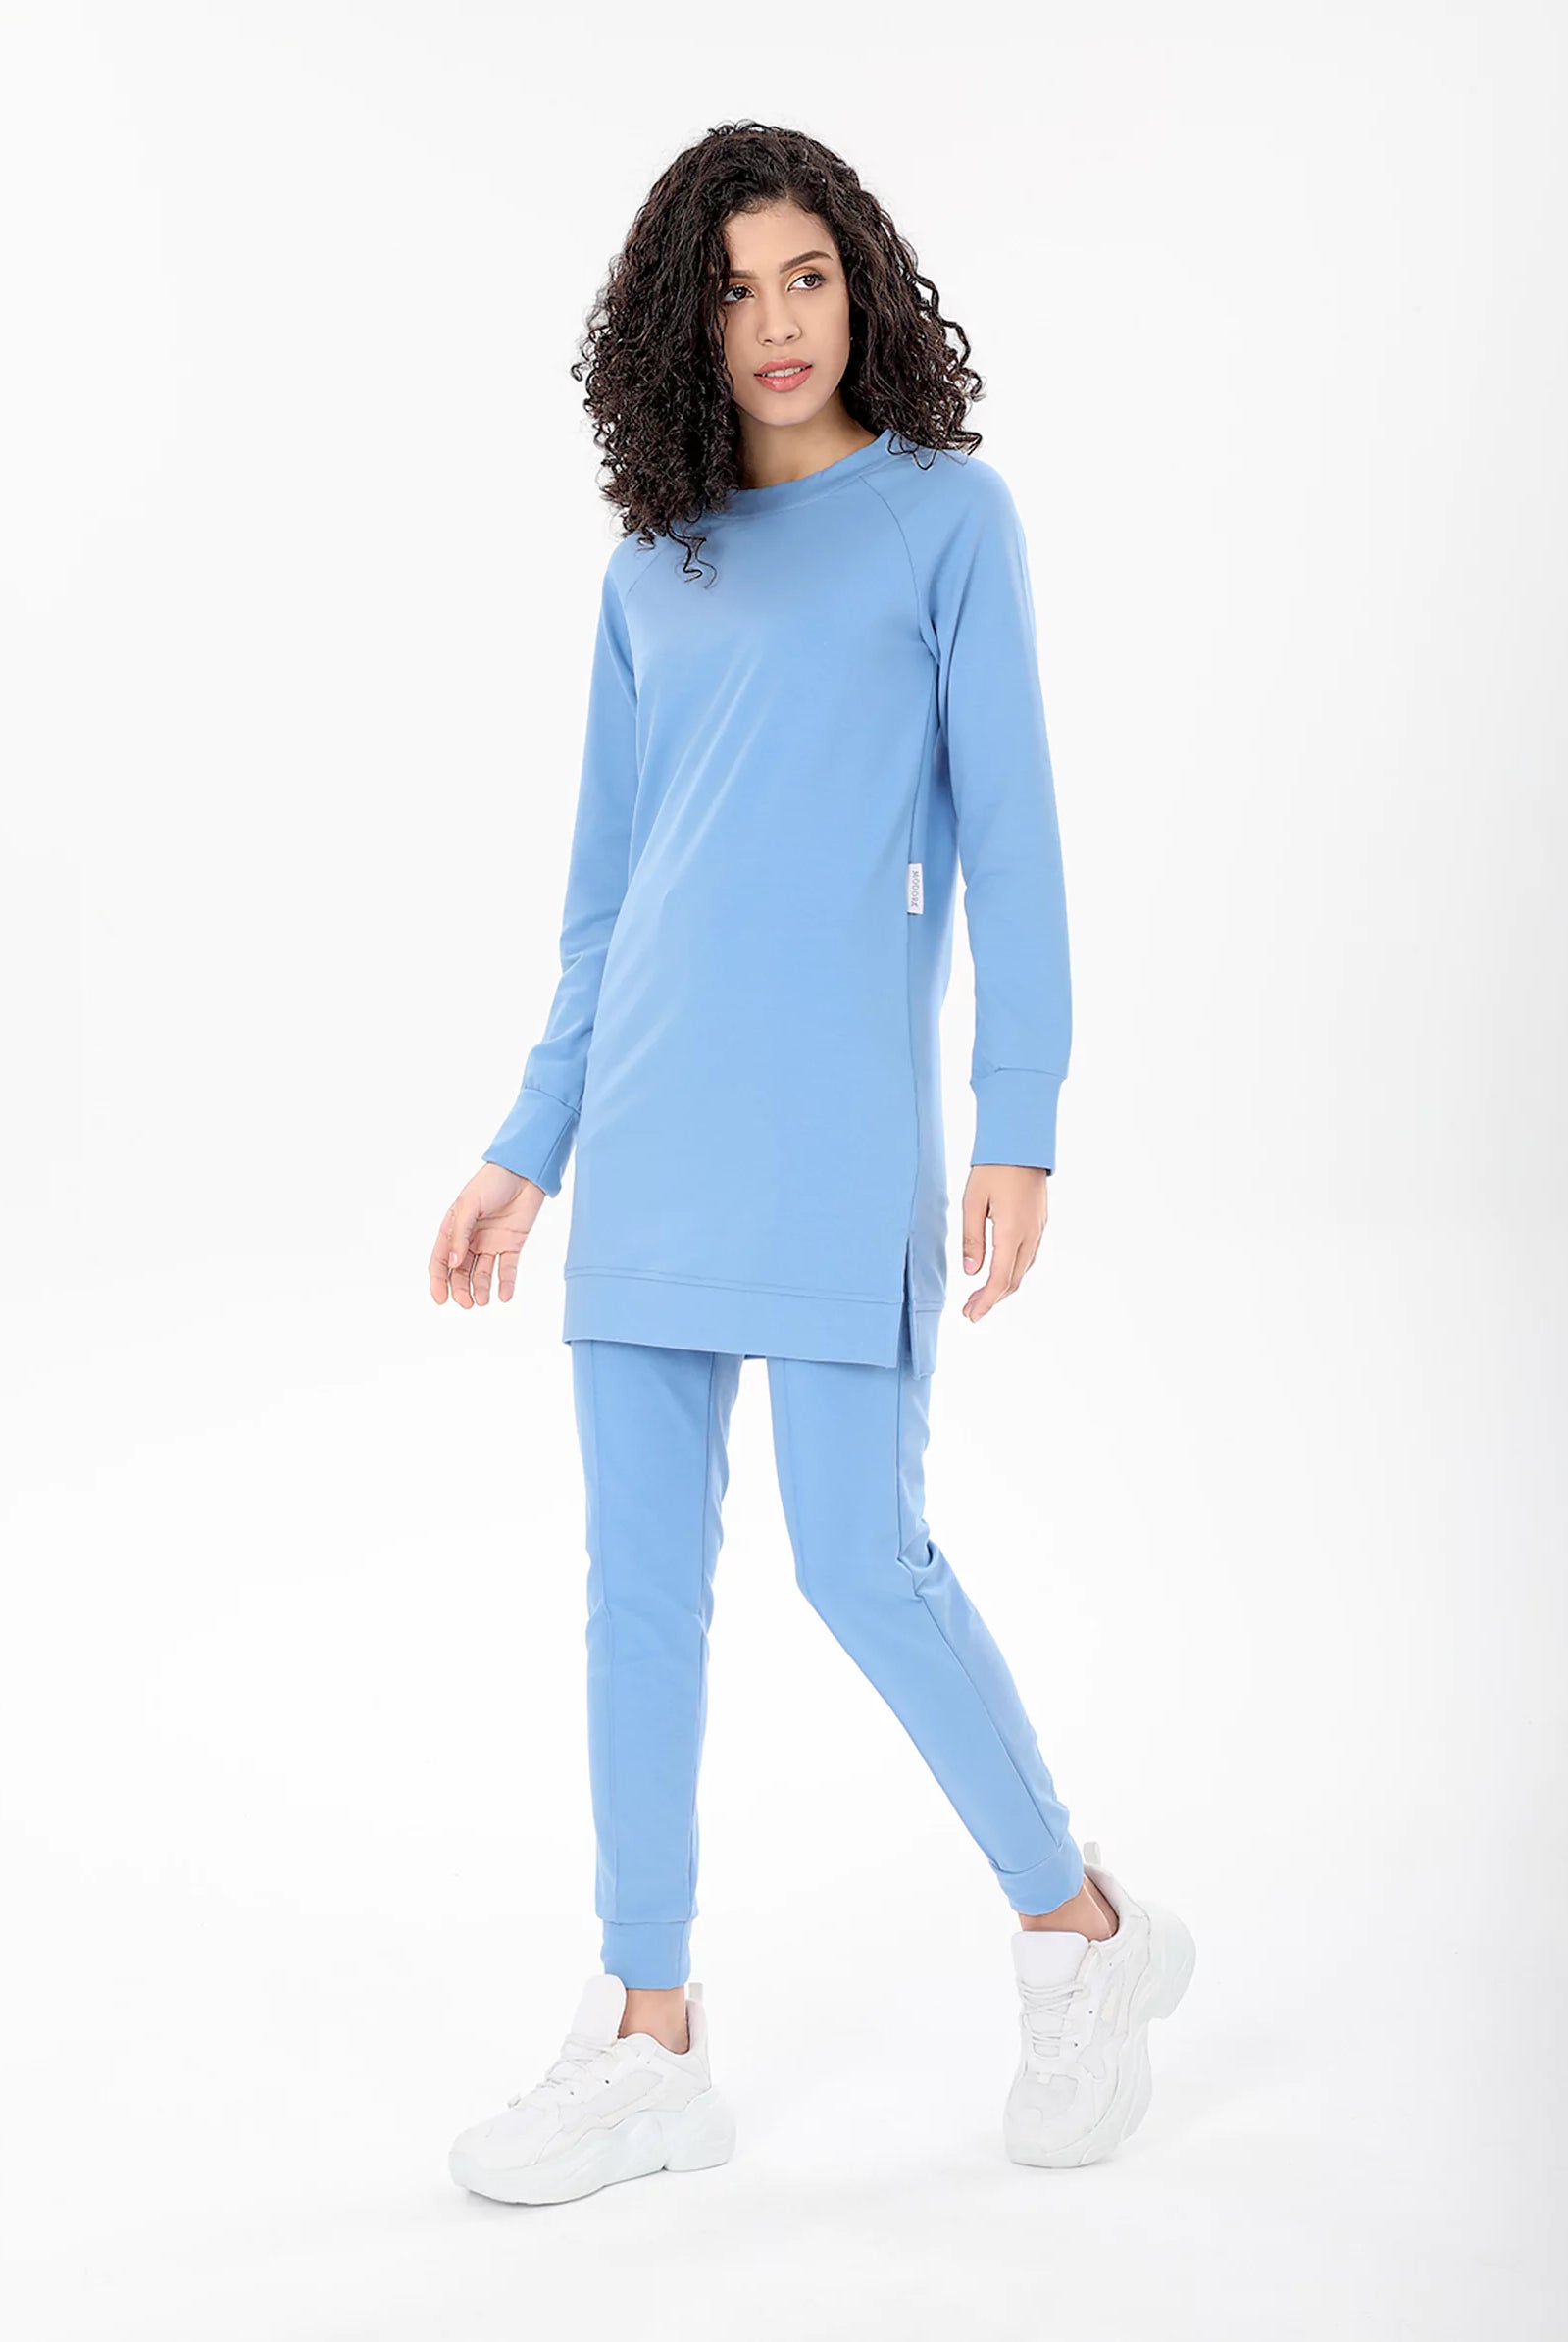 Womens Blue Longline Sweatshirts